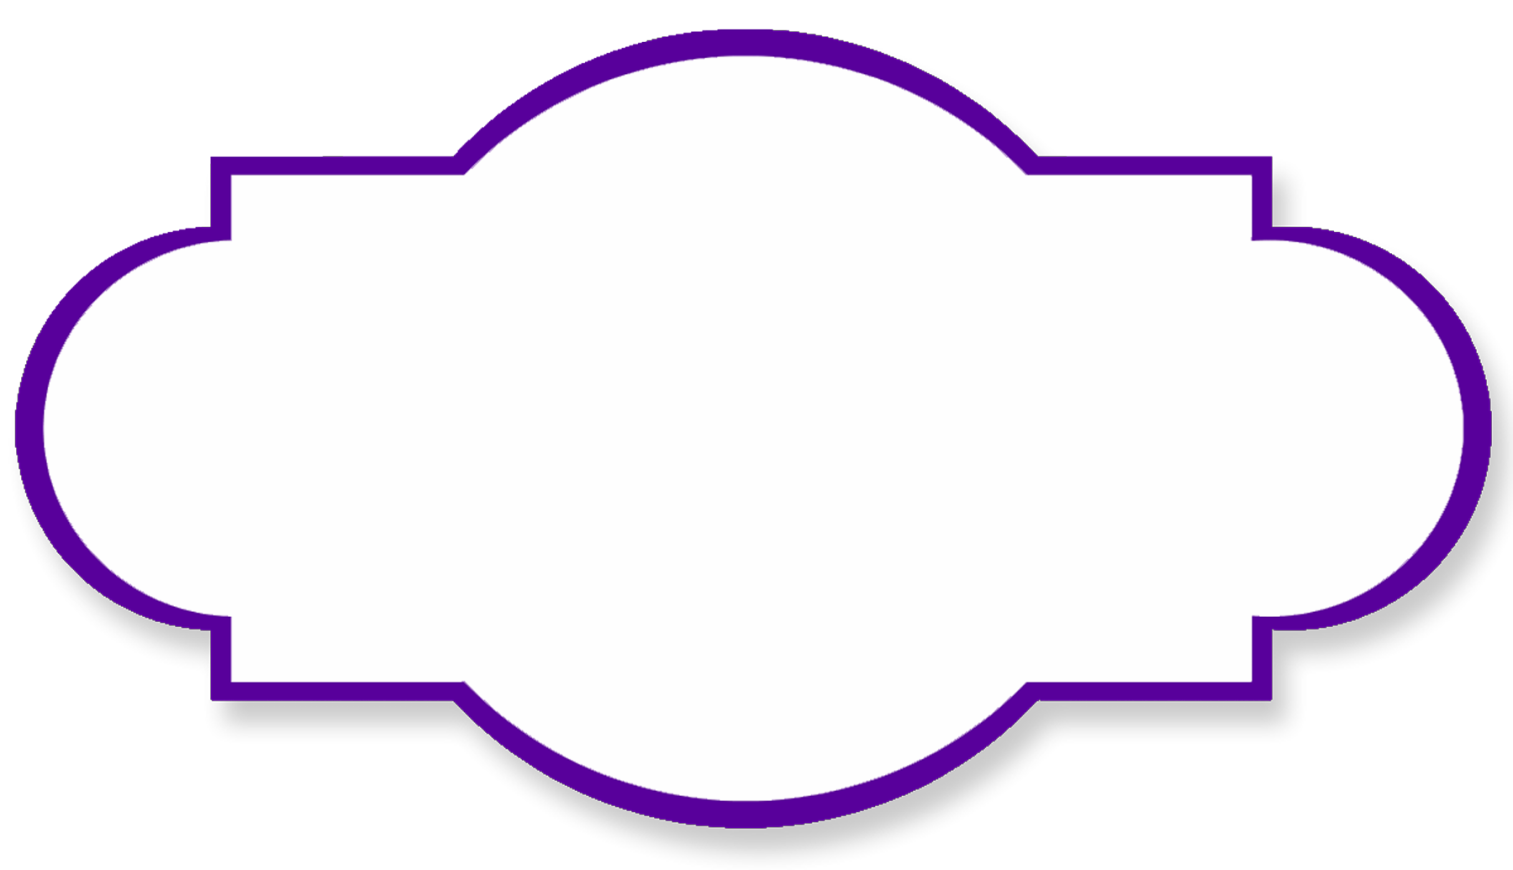 Clipart borders purple - ClipartFox